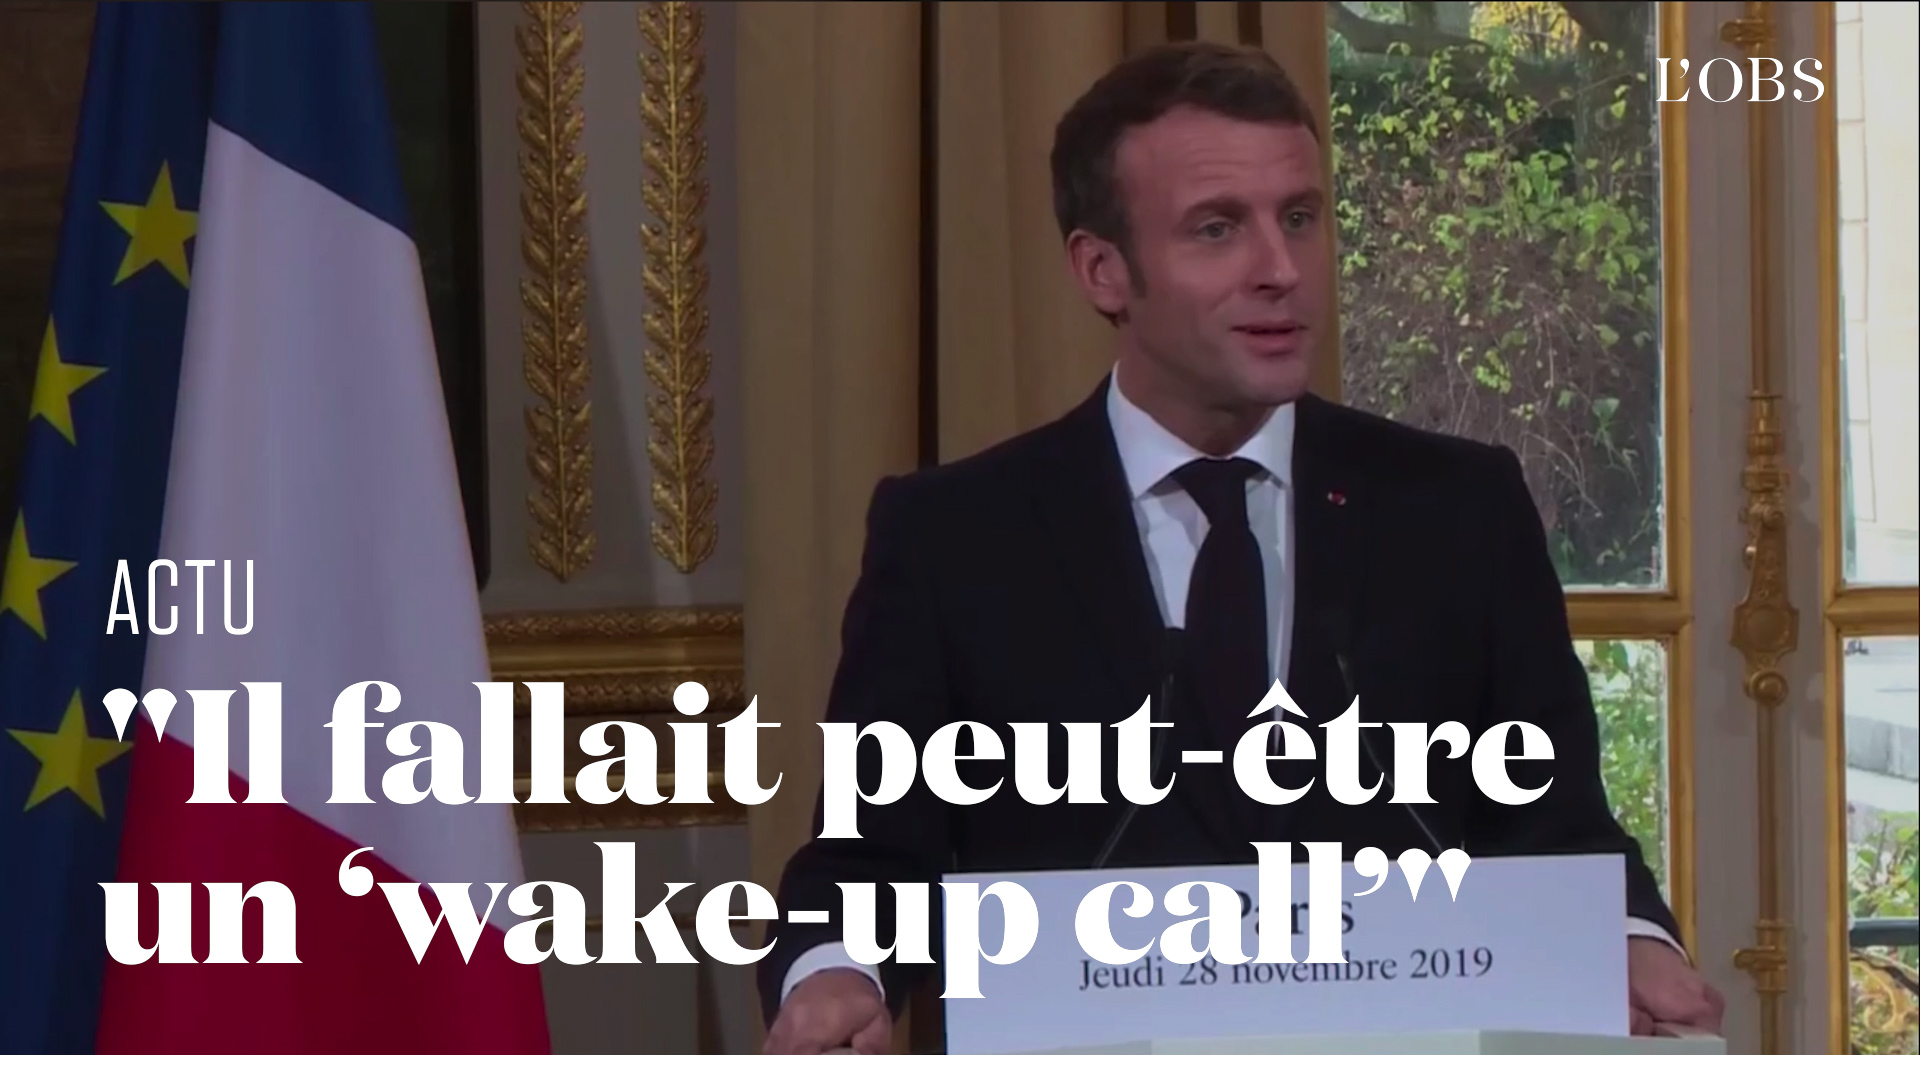 "Mort cérébrale" de l'Otan : Macron "assume totalement" ses propos